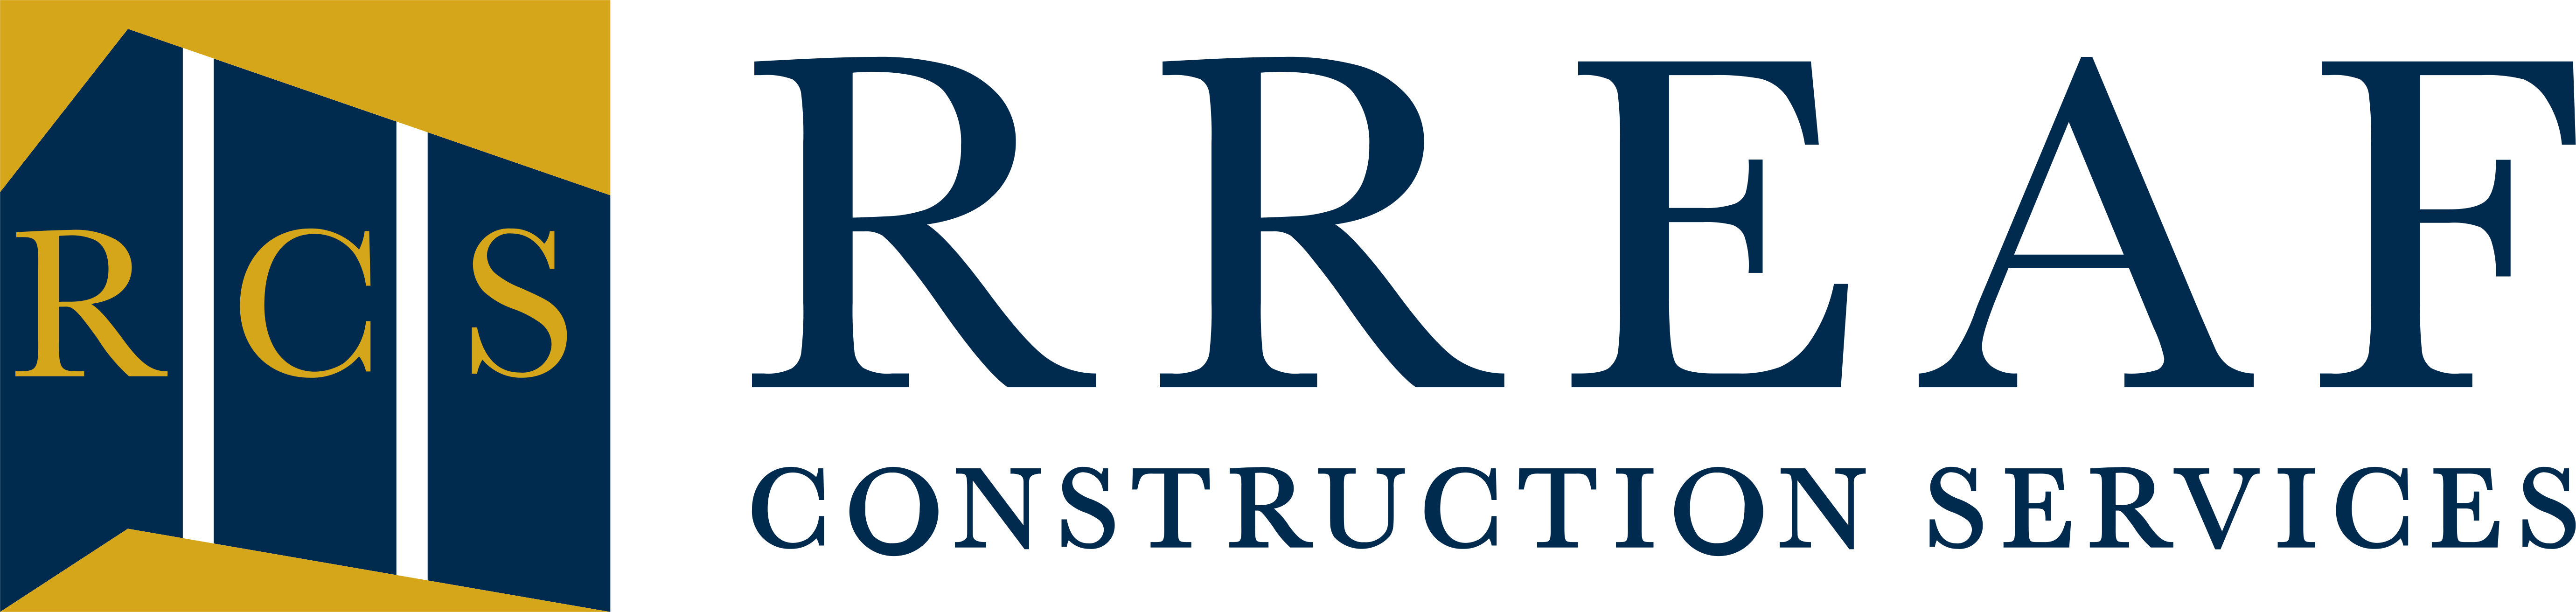 RREAF Holdings